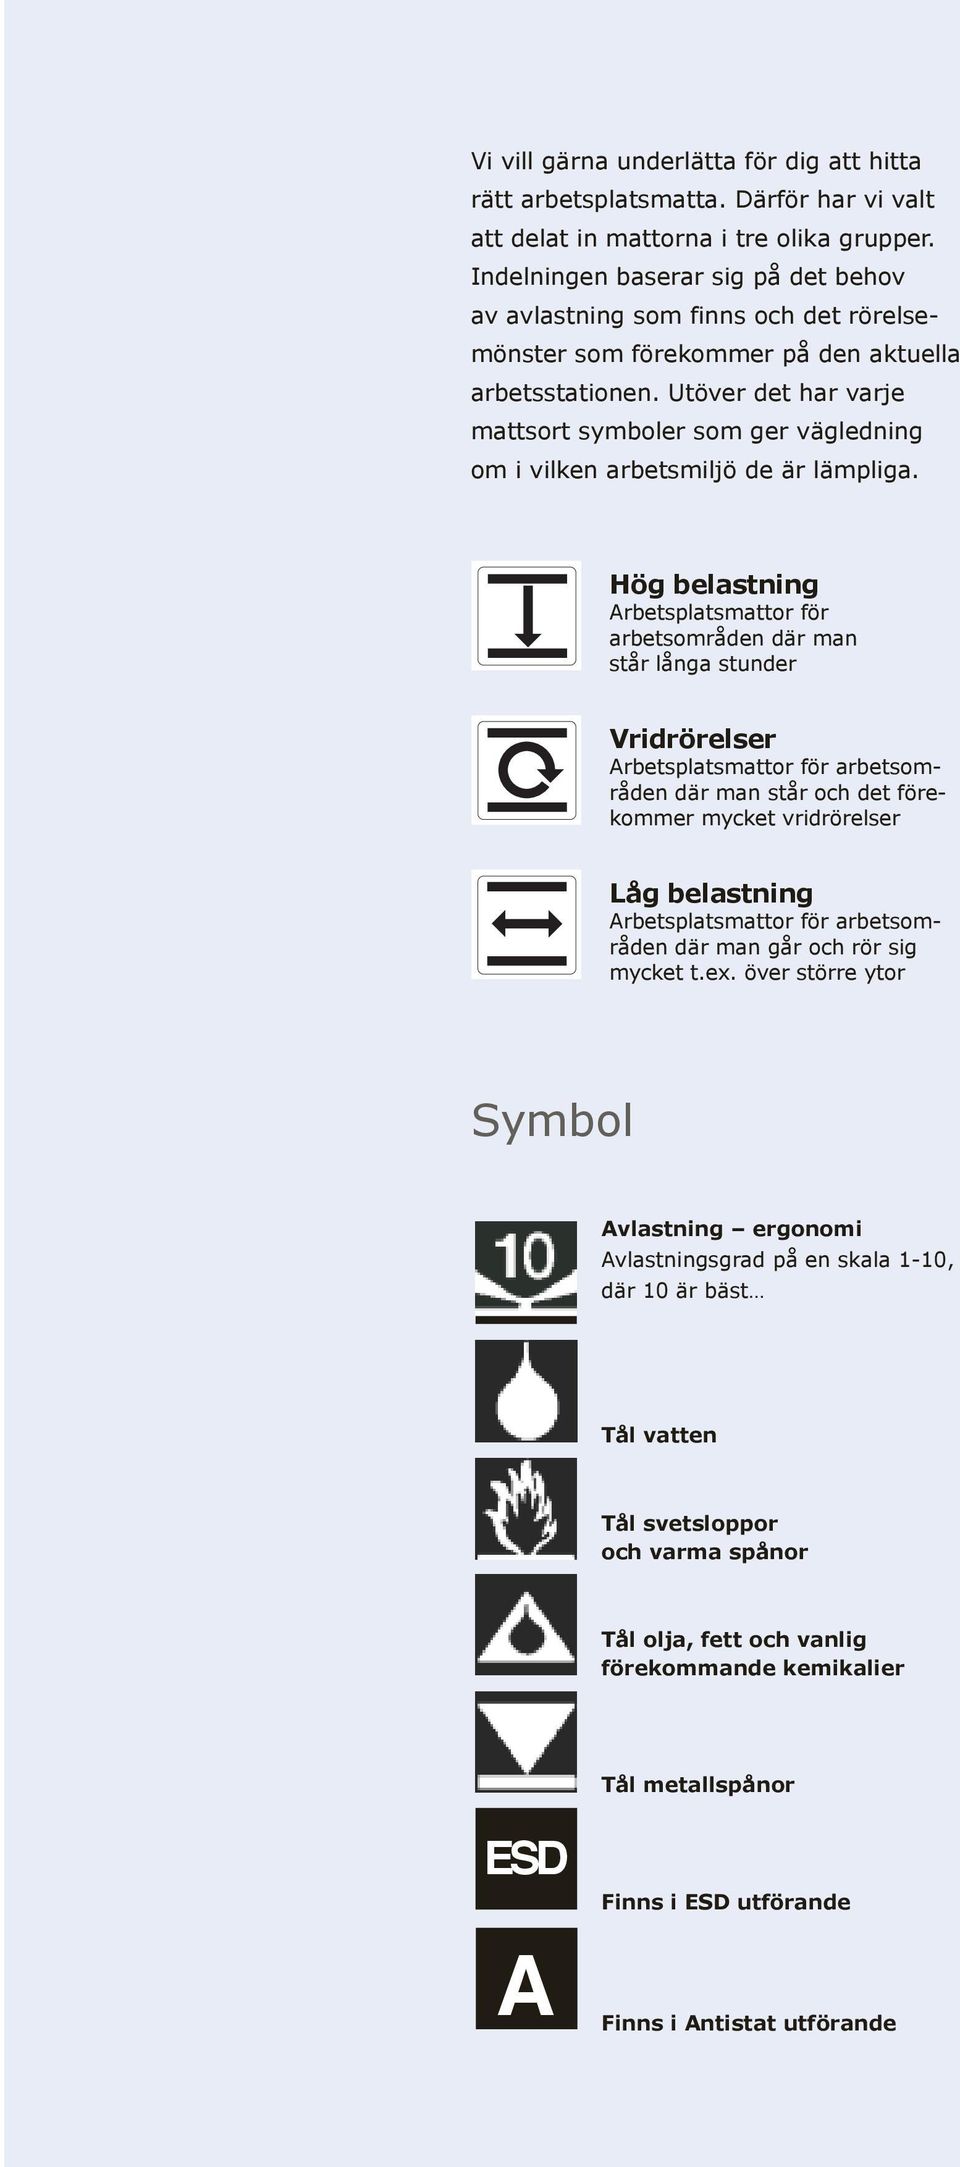 Utöver det har varje mattsort symboler som ger vägledning om i vilken arbetsmiljö de är lämpliga.